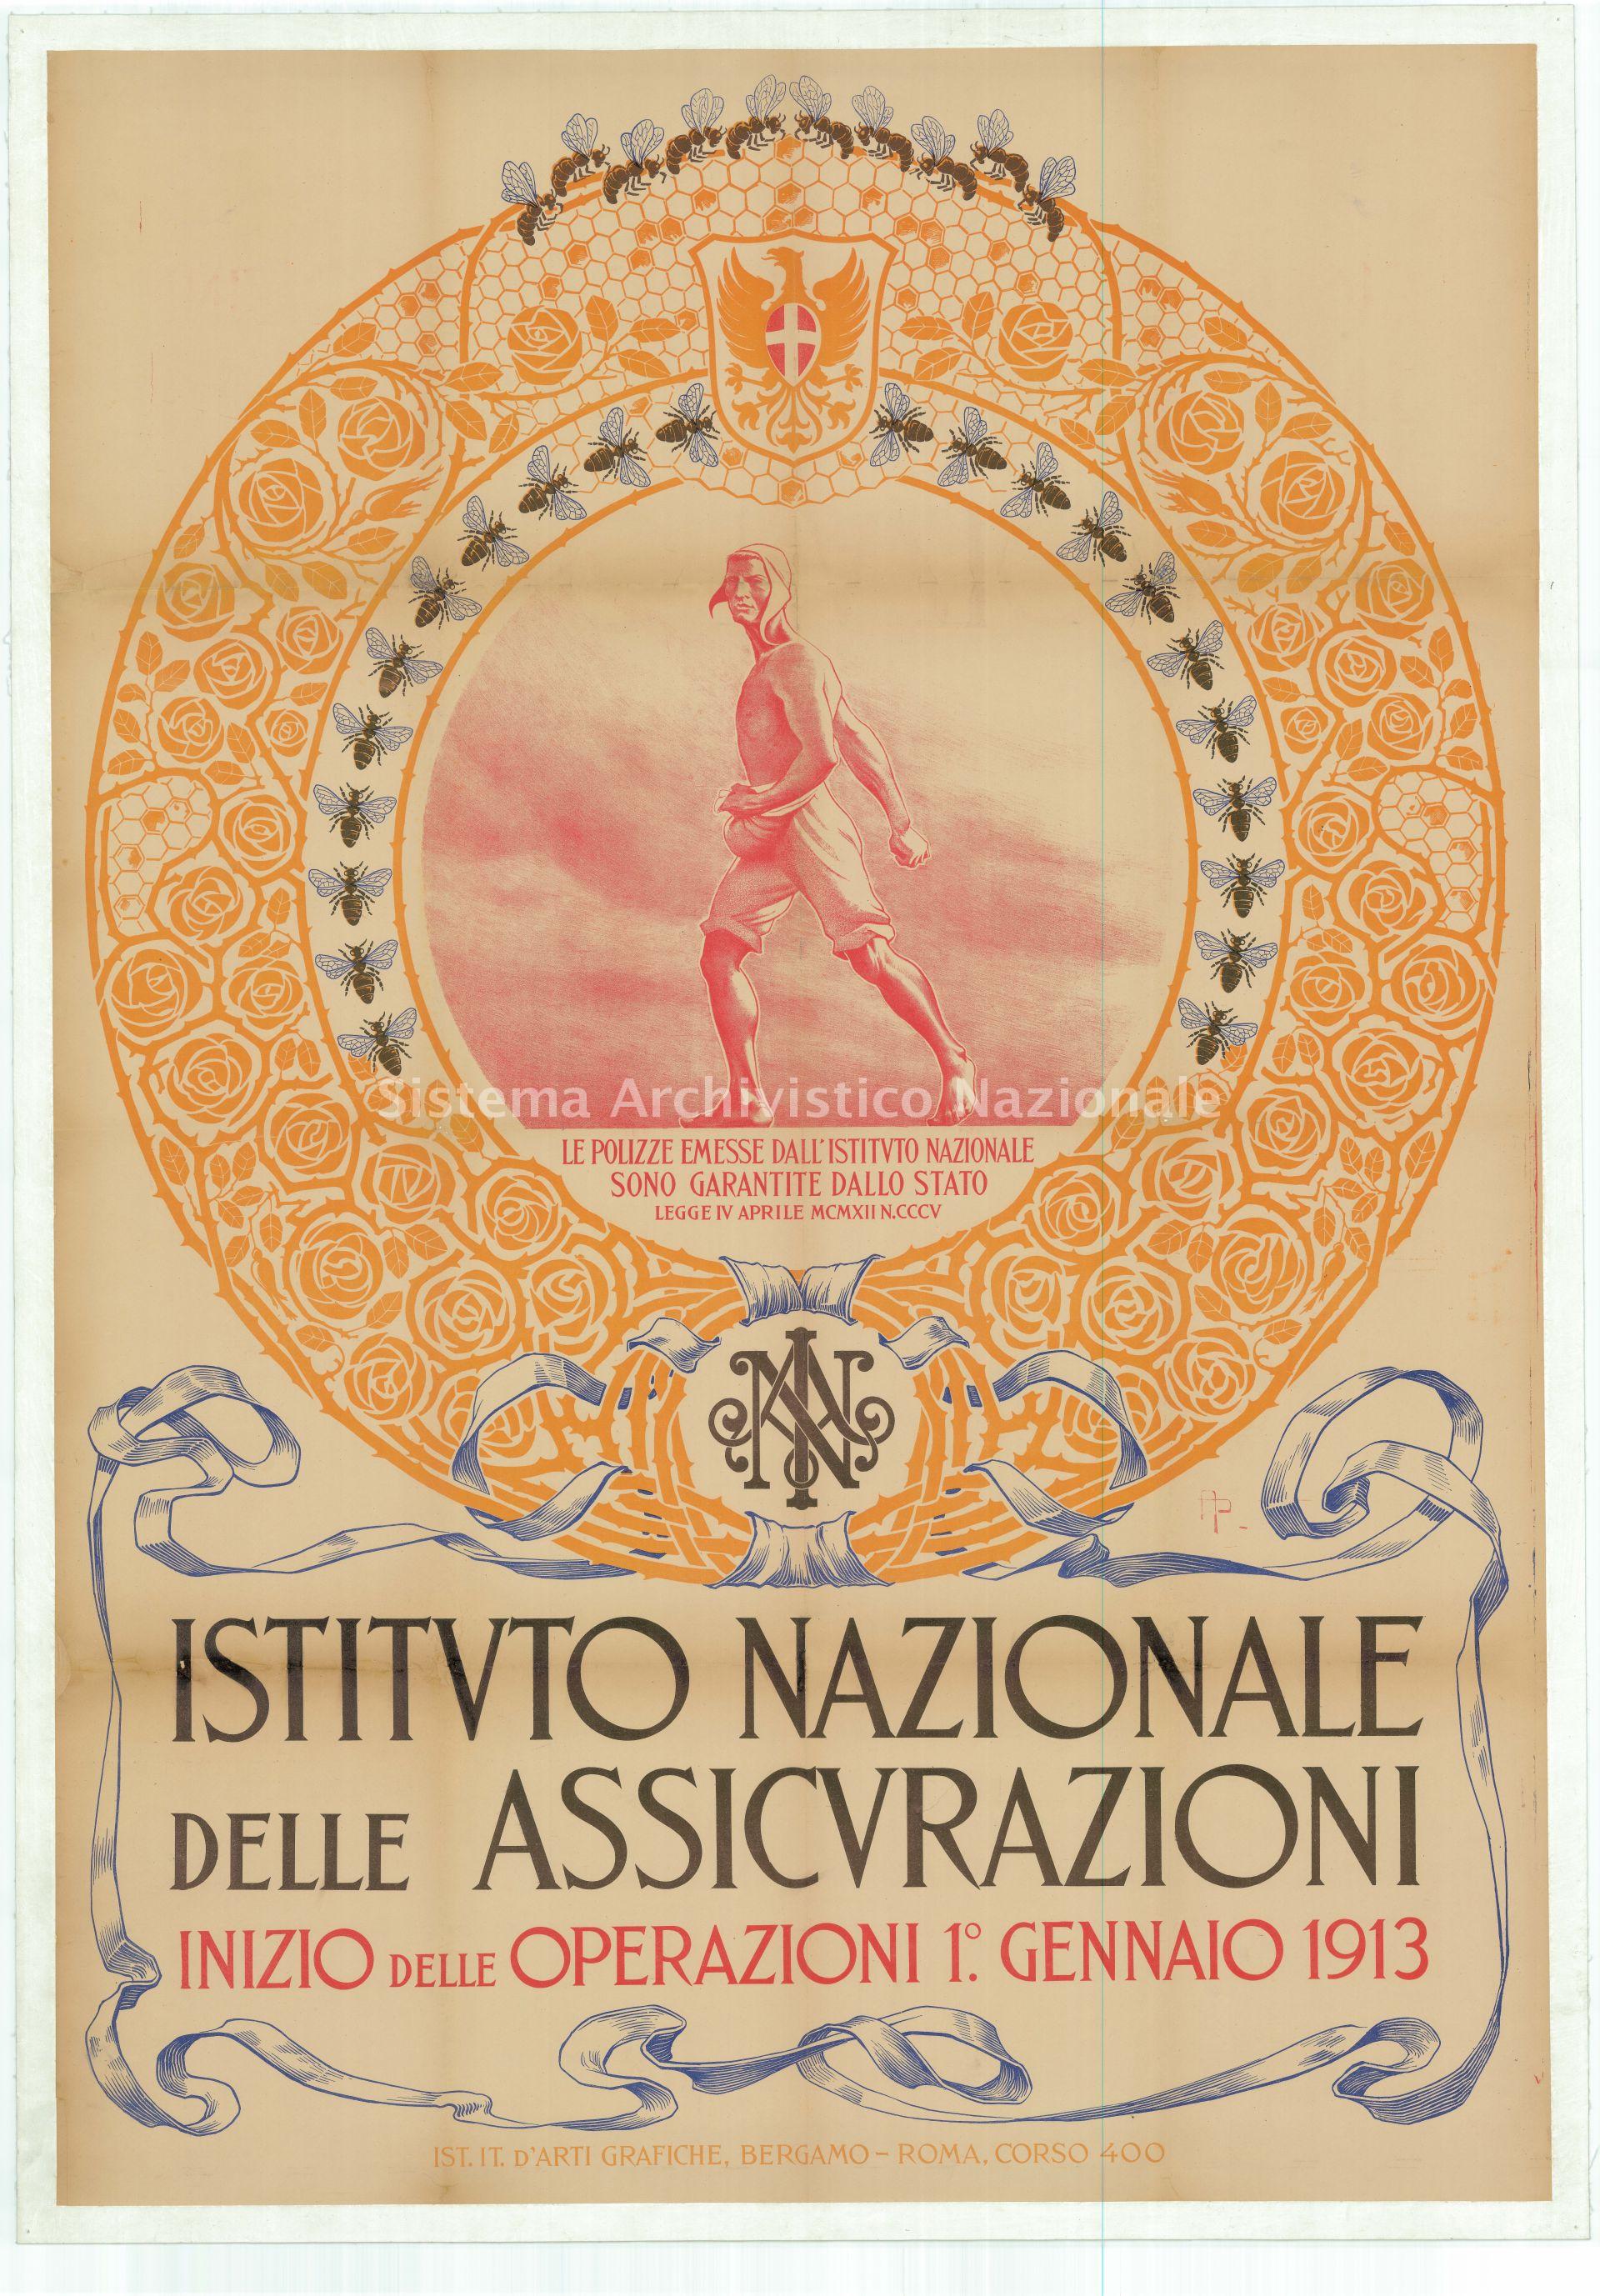   Manifesto pubblicitario Ina (1910-20), realizzato da Andrea Petroni (Ina Archivio storico, fondo del Cinquantenario).
